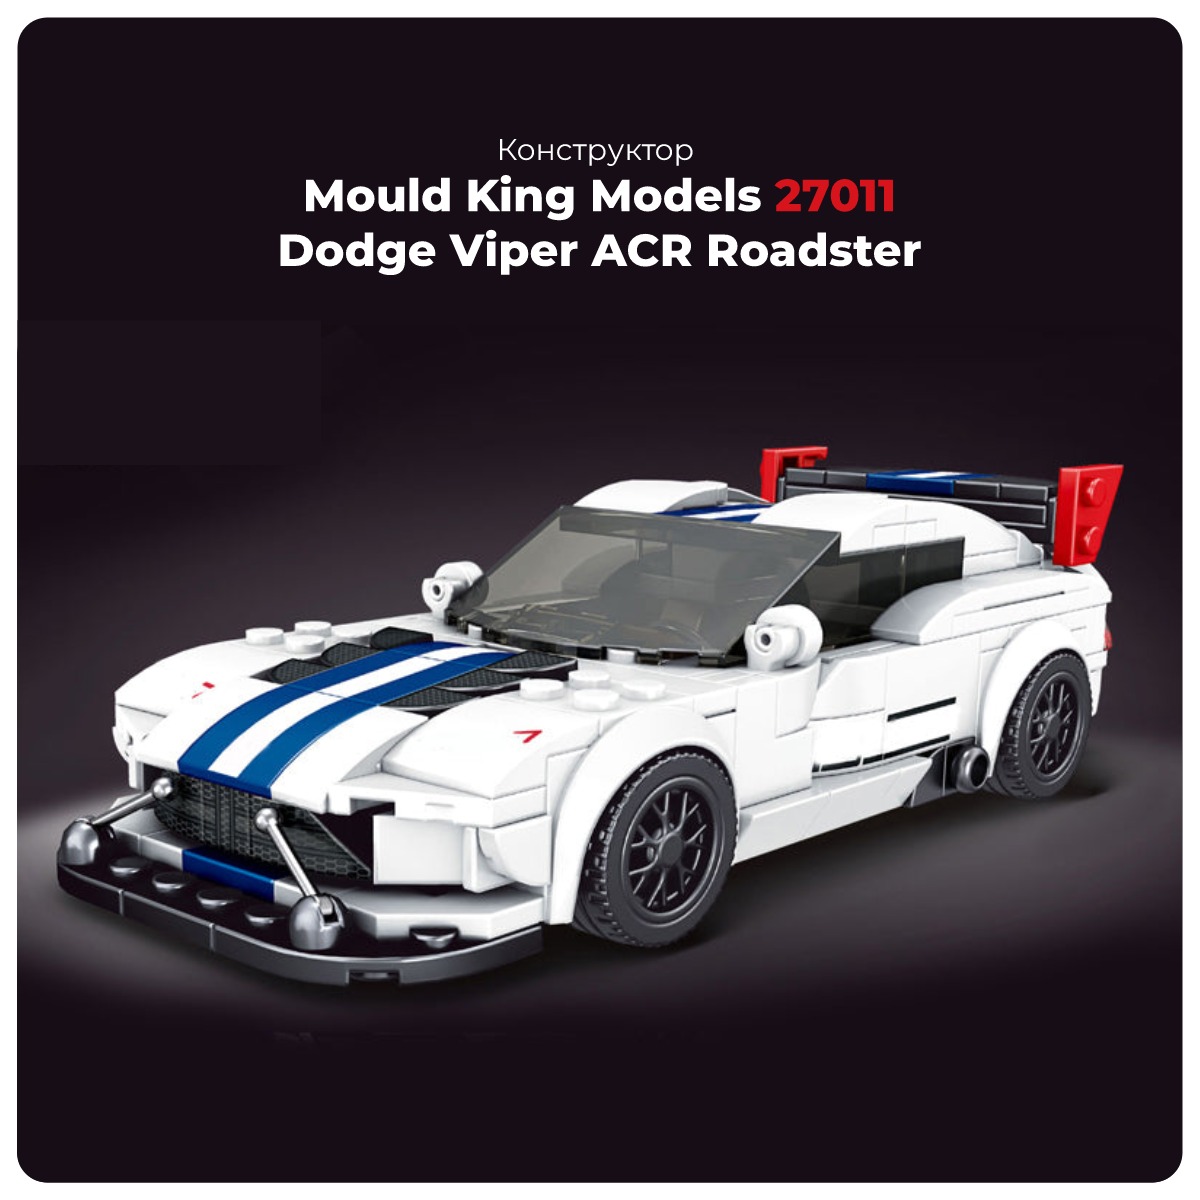 Mould-King-Models-27011-Dodge-Viper-ACR-Roadster-01